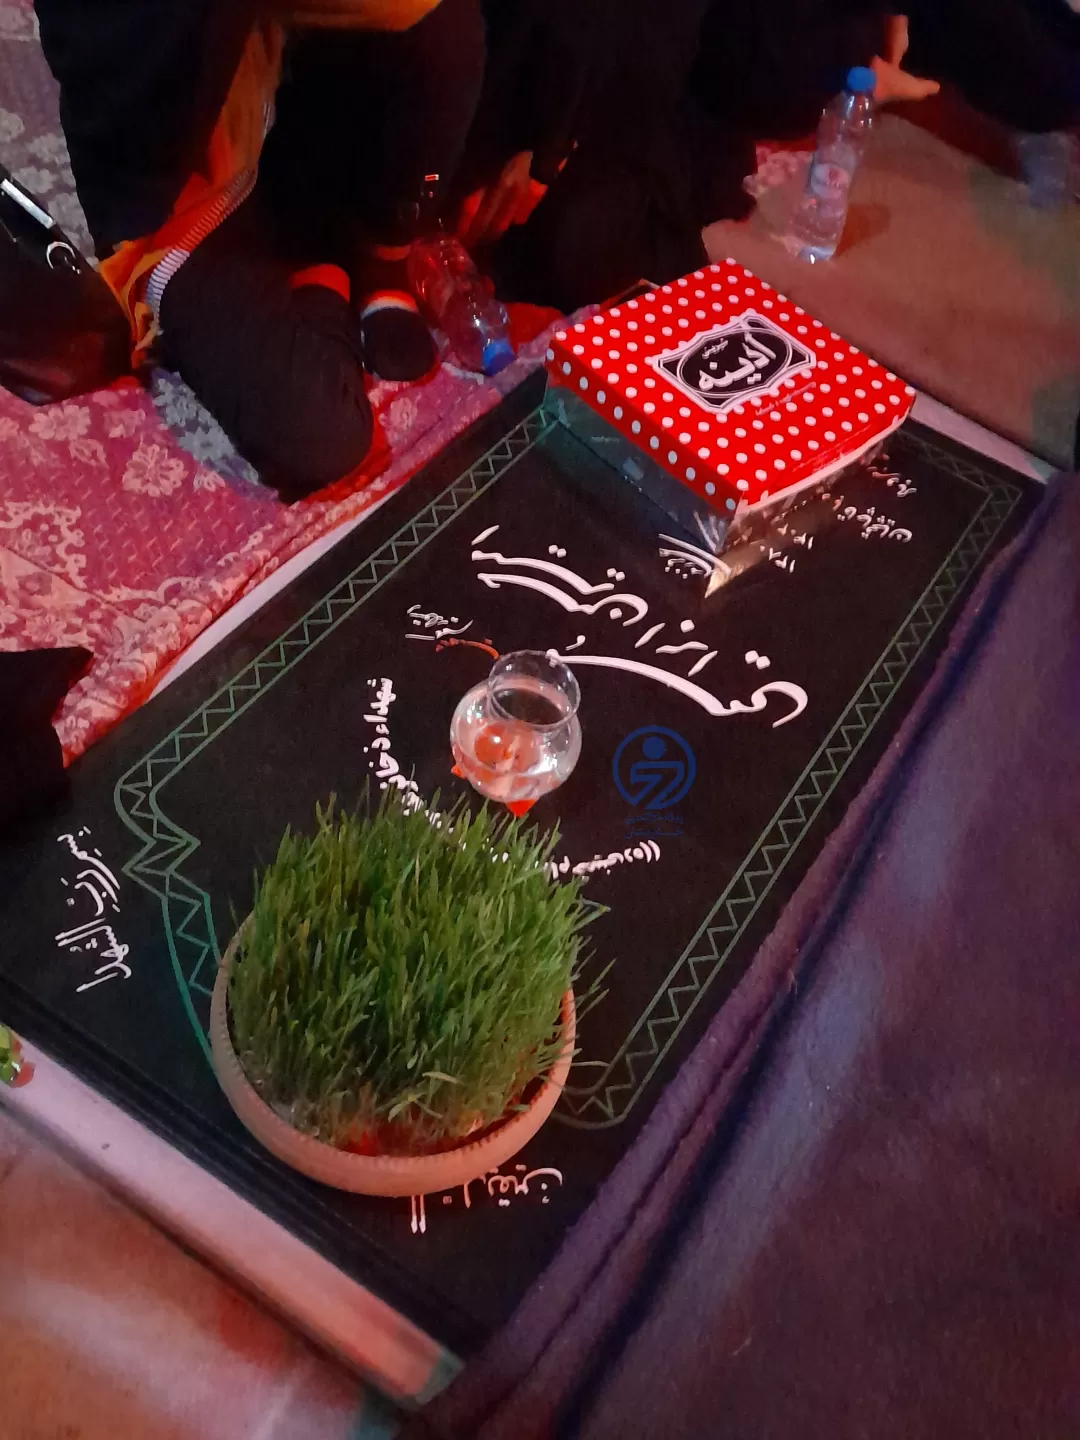 ویژه برنامه آخرین شب سال در مزارشهدای بیرجند